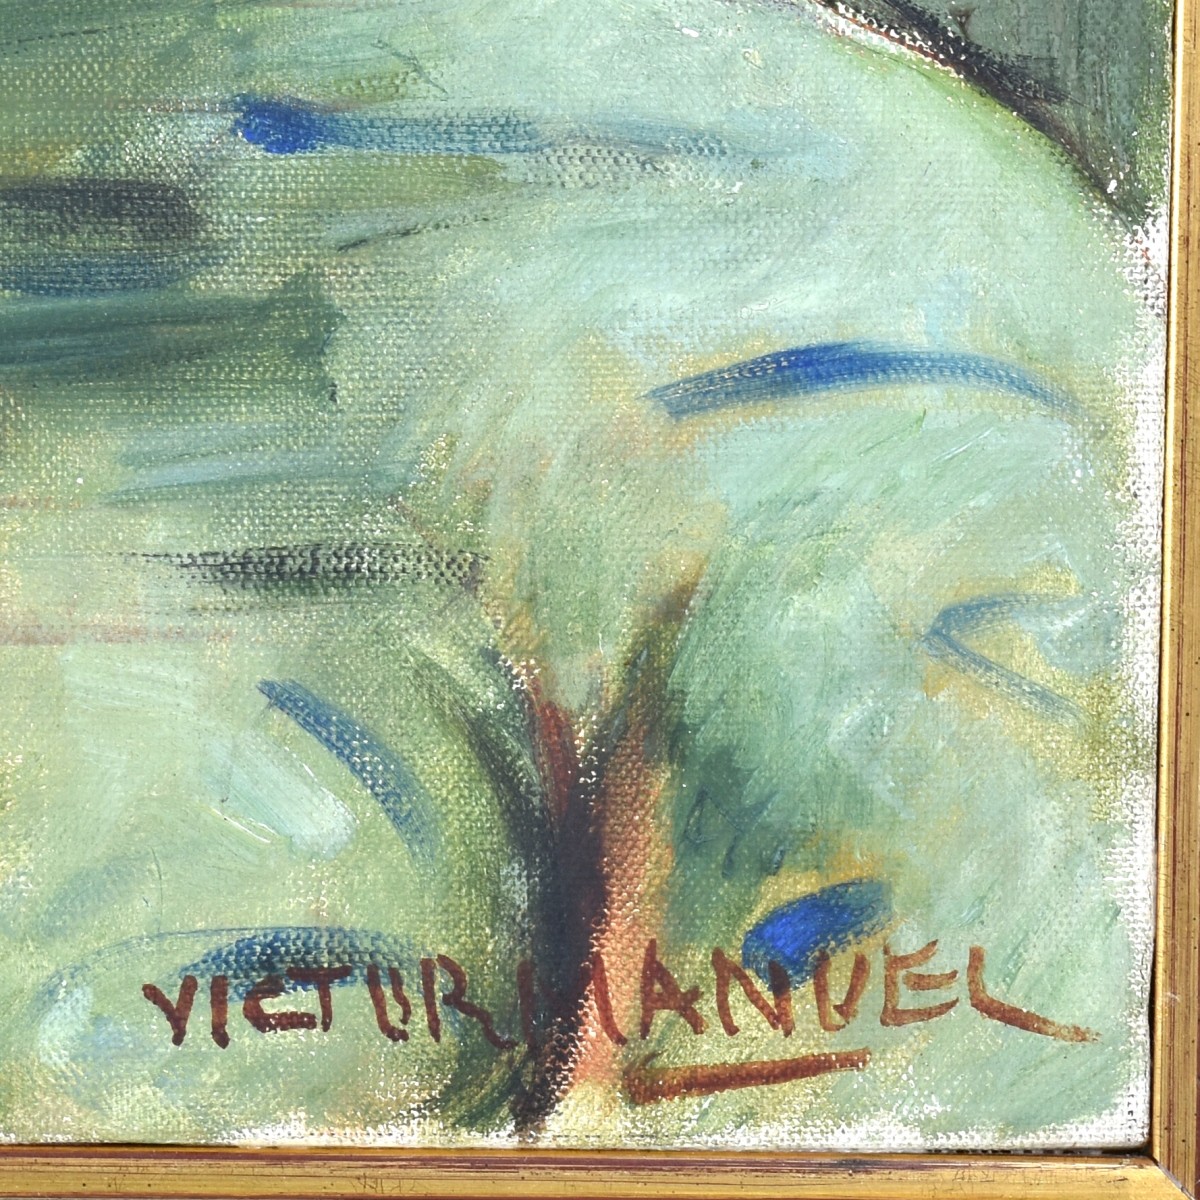 Victor Manuel, Cuban (1897 - 1969)